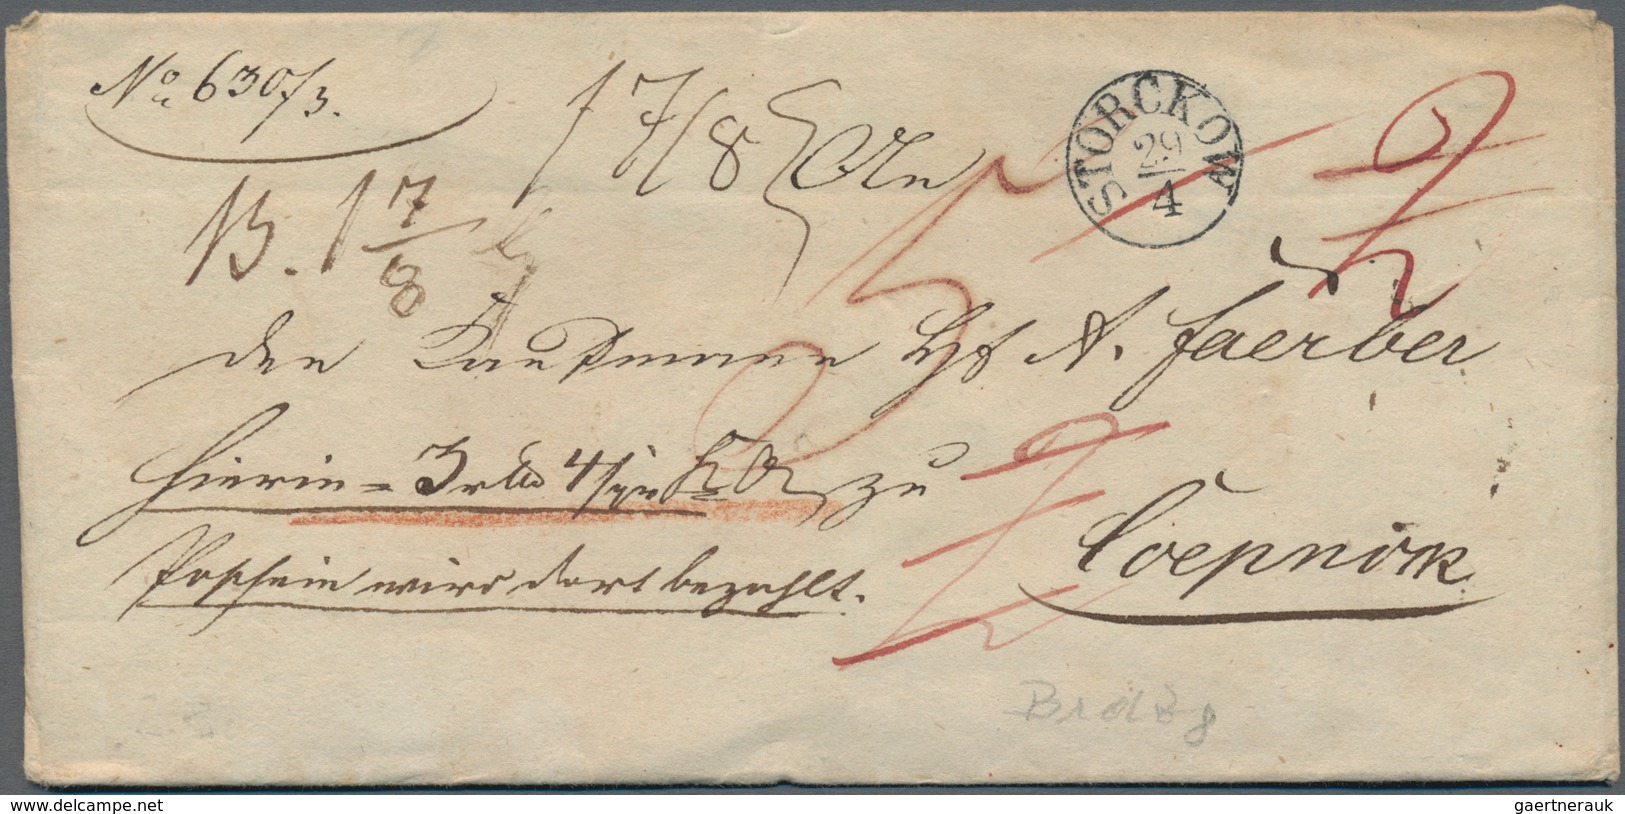 Altdeutschland - Vorphila: 1714 ab, reichhaltiger Posten mit ca.120 Belegen, dabei Einschreiben, Wer